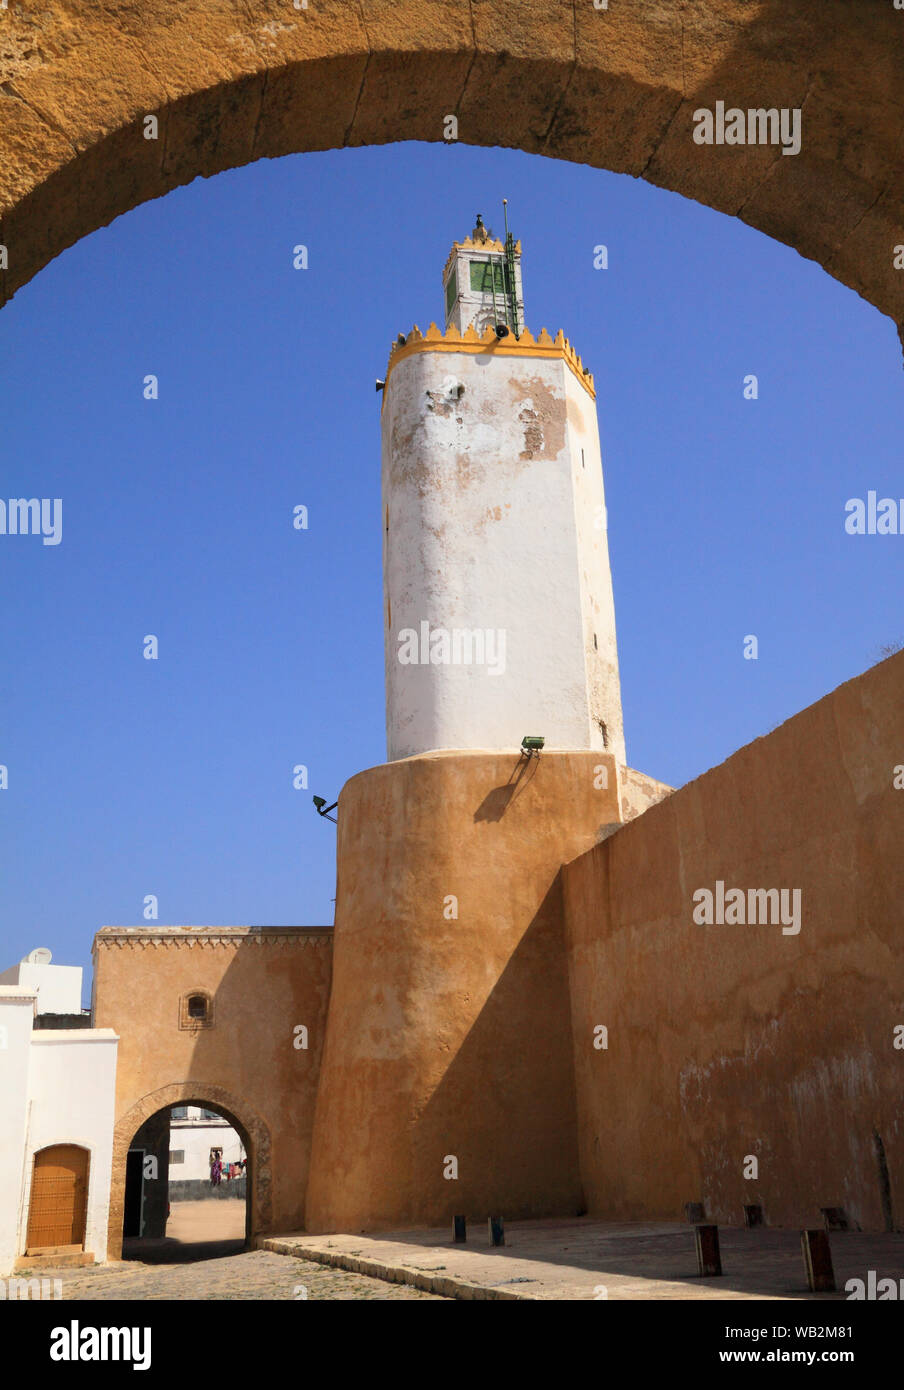 Insolito antico minareto della moschea, raddoppiando come un faro. El-Jadida, Marocco Foto Stock